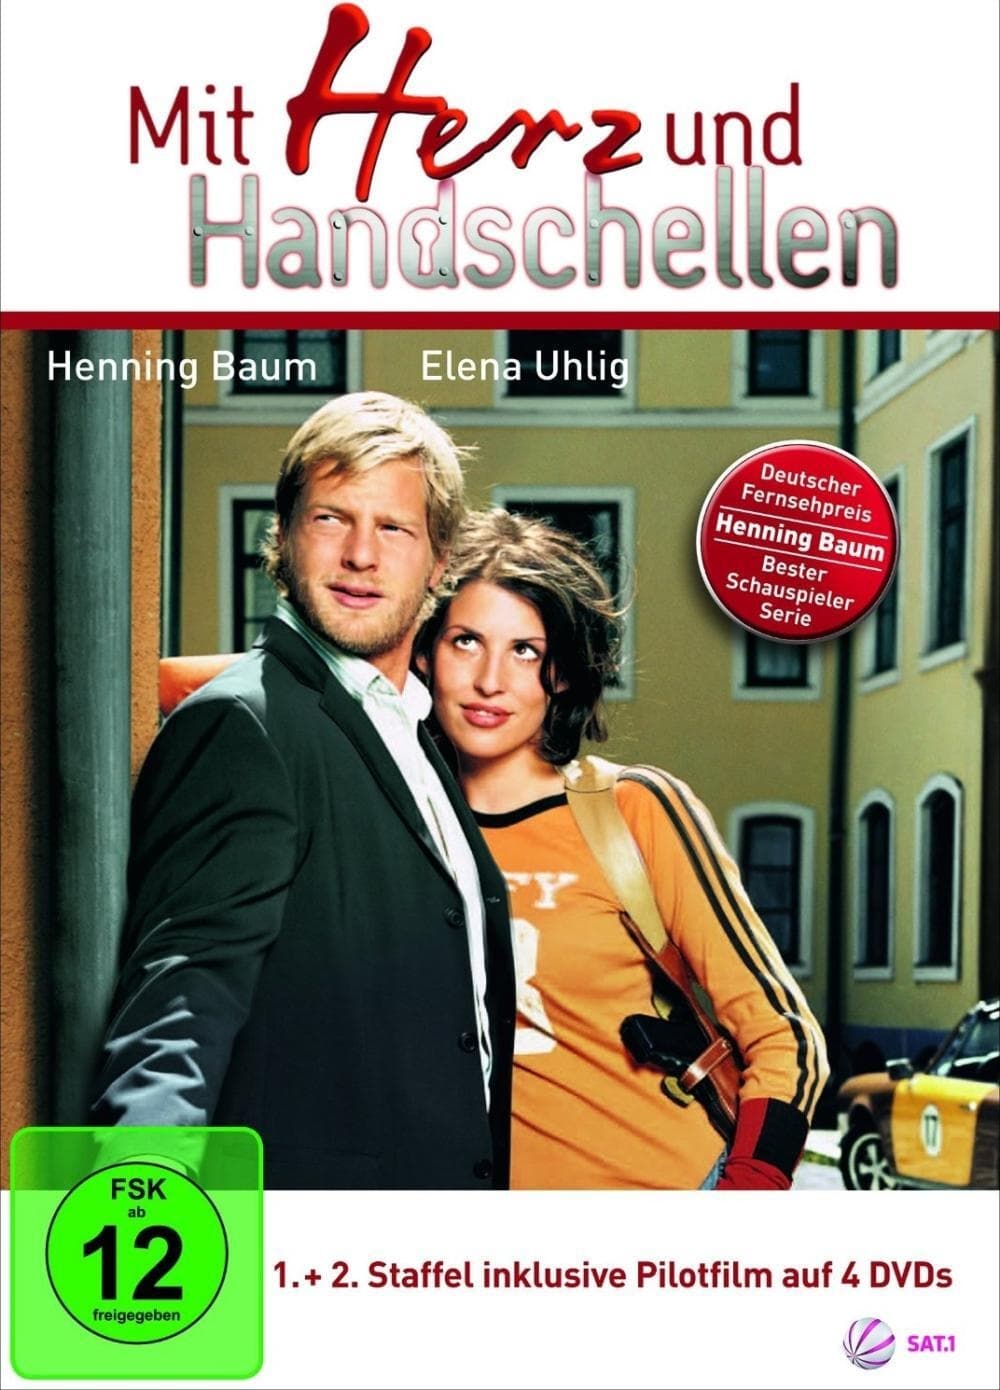 Mit Herz und Handschellen (2002)